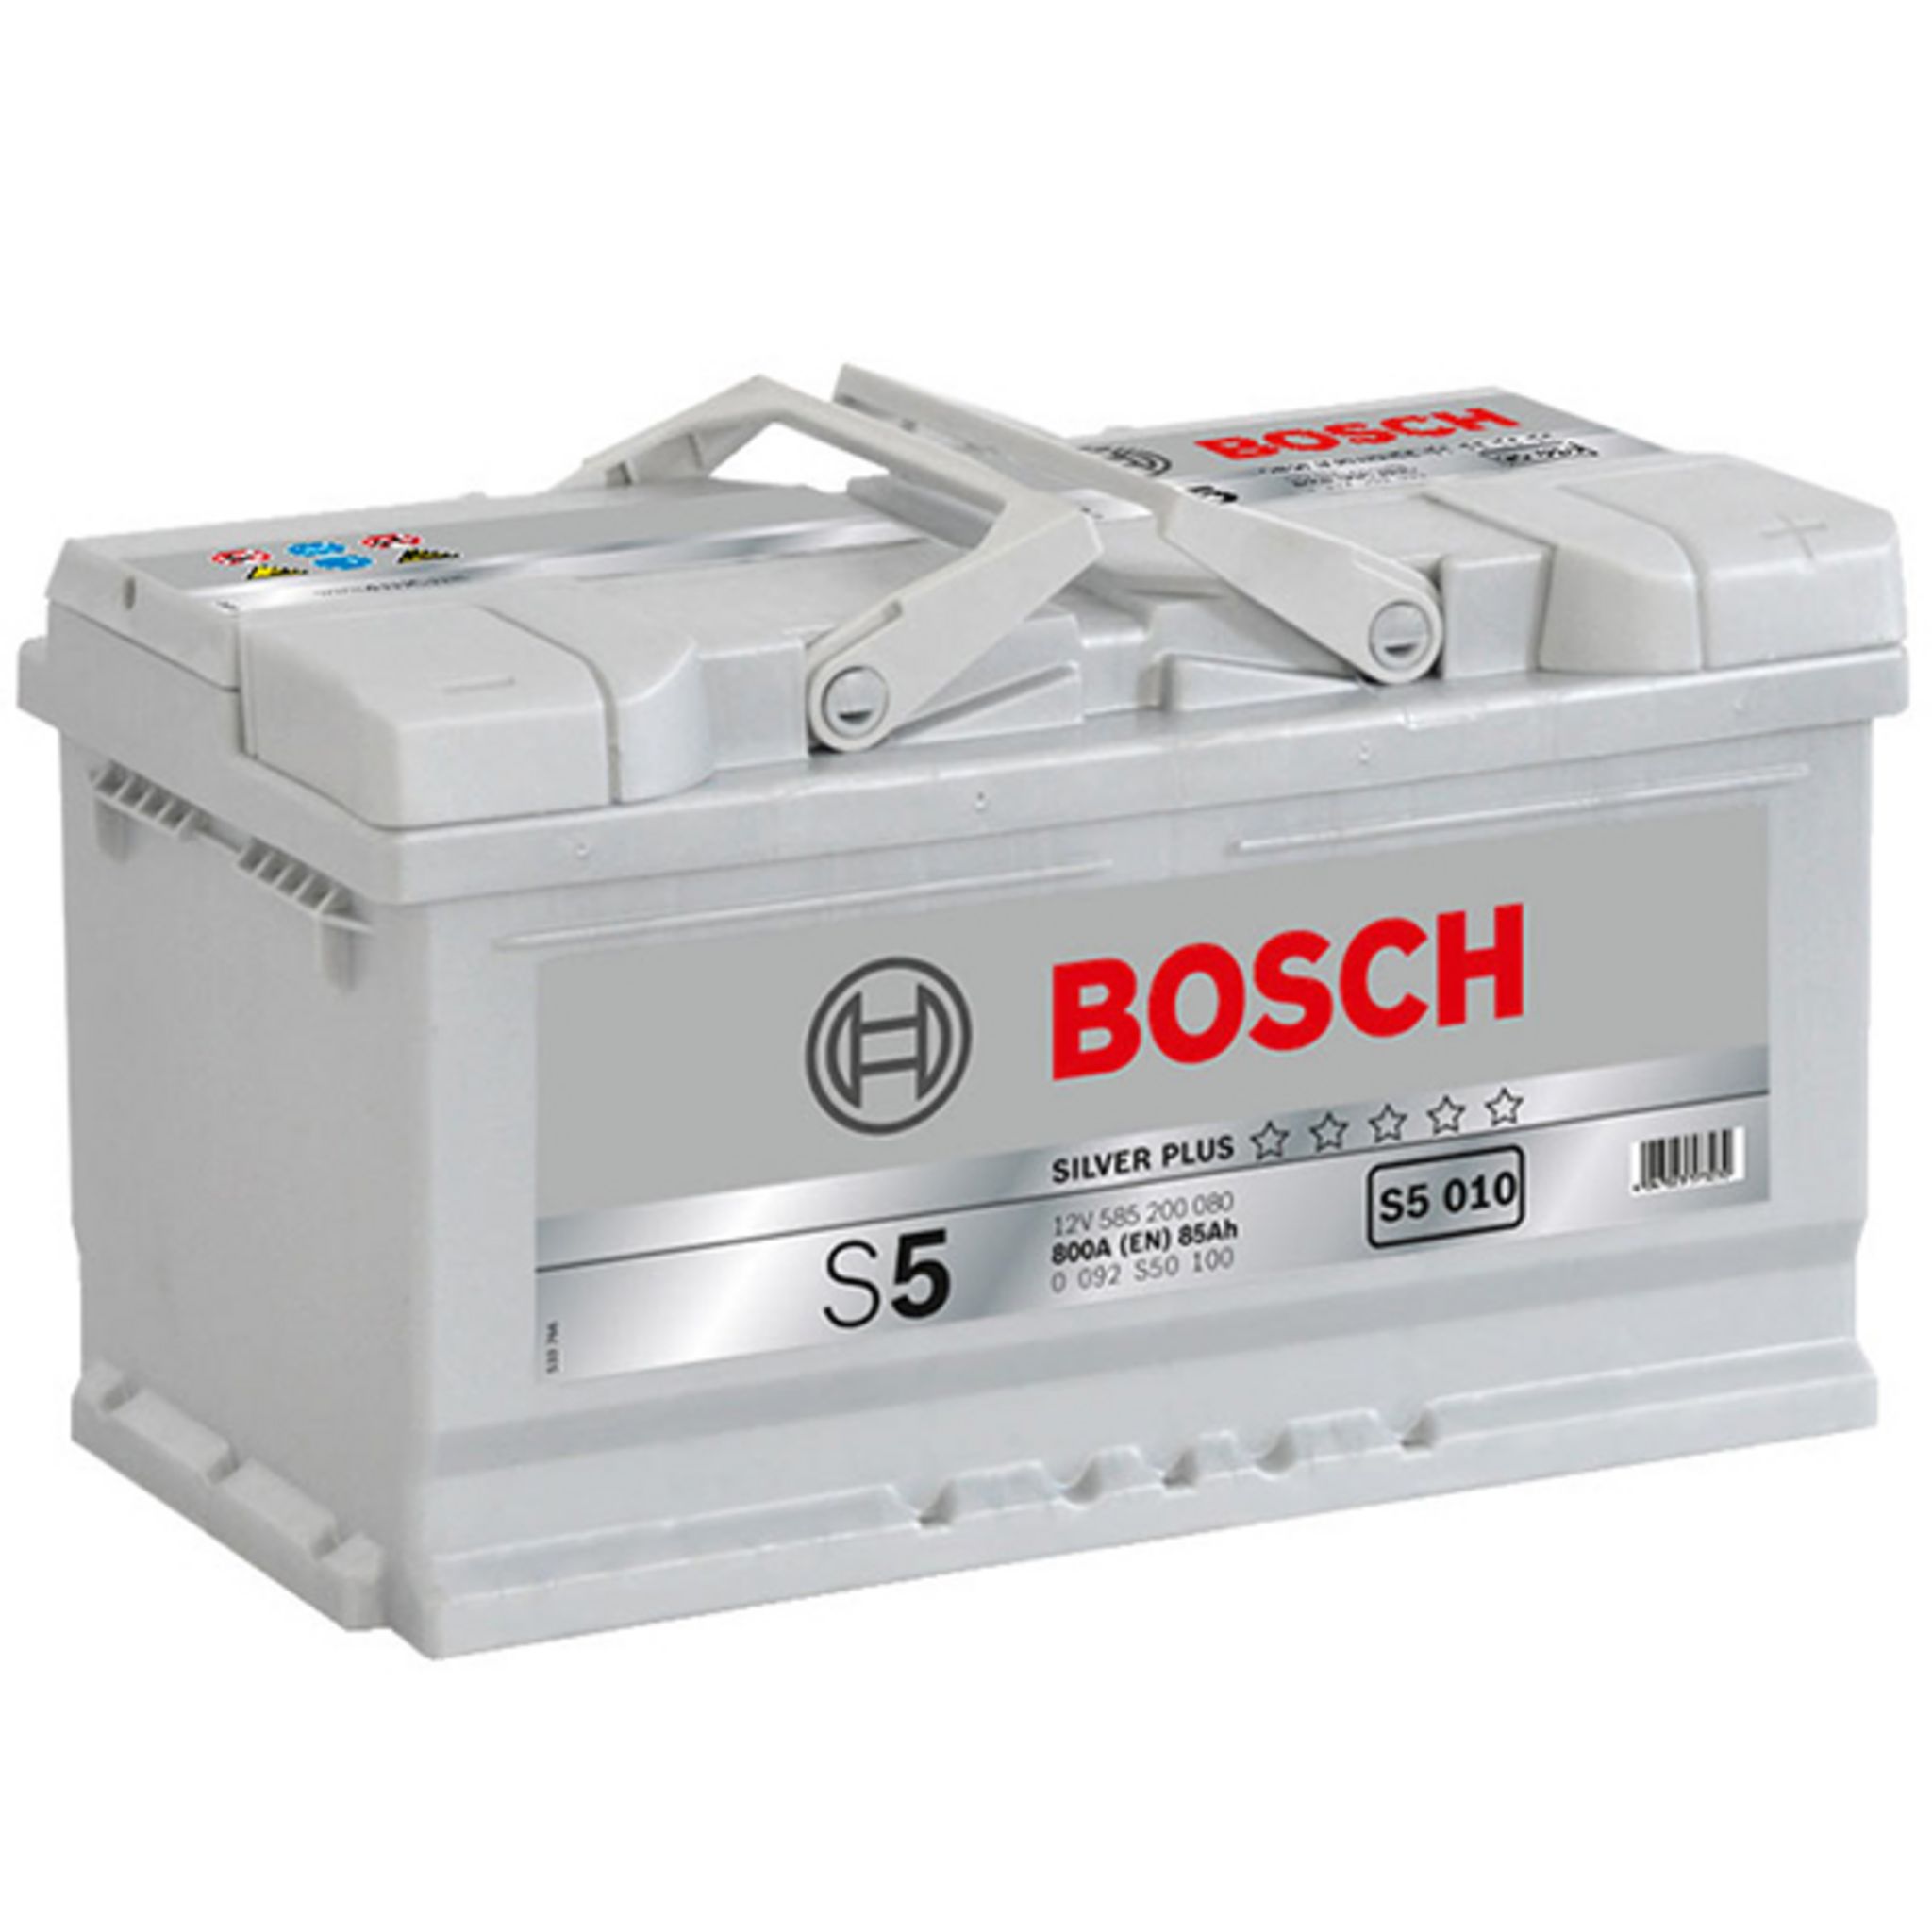 Аккумулятор автомобильный 85. 0092s50100 Bosch аккумулятор автомобильный. 0092s50150 Bosch. Аккумулятор Bosch 0092s50040. Аккумулятор Bosch 0092s30020.